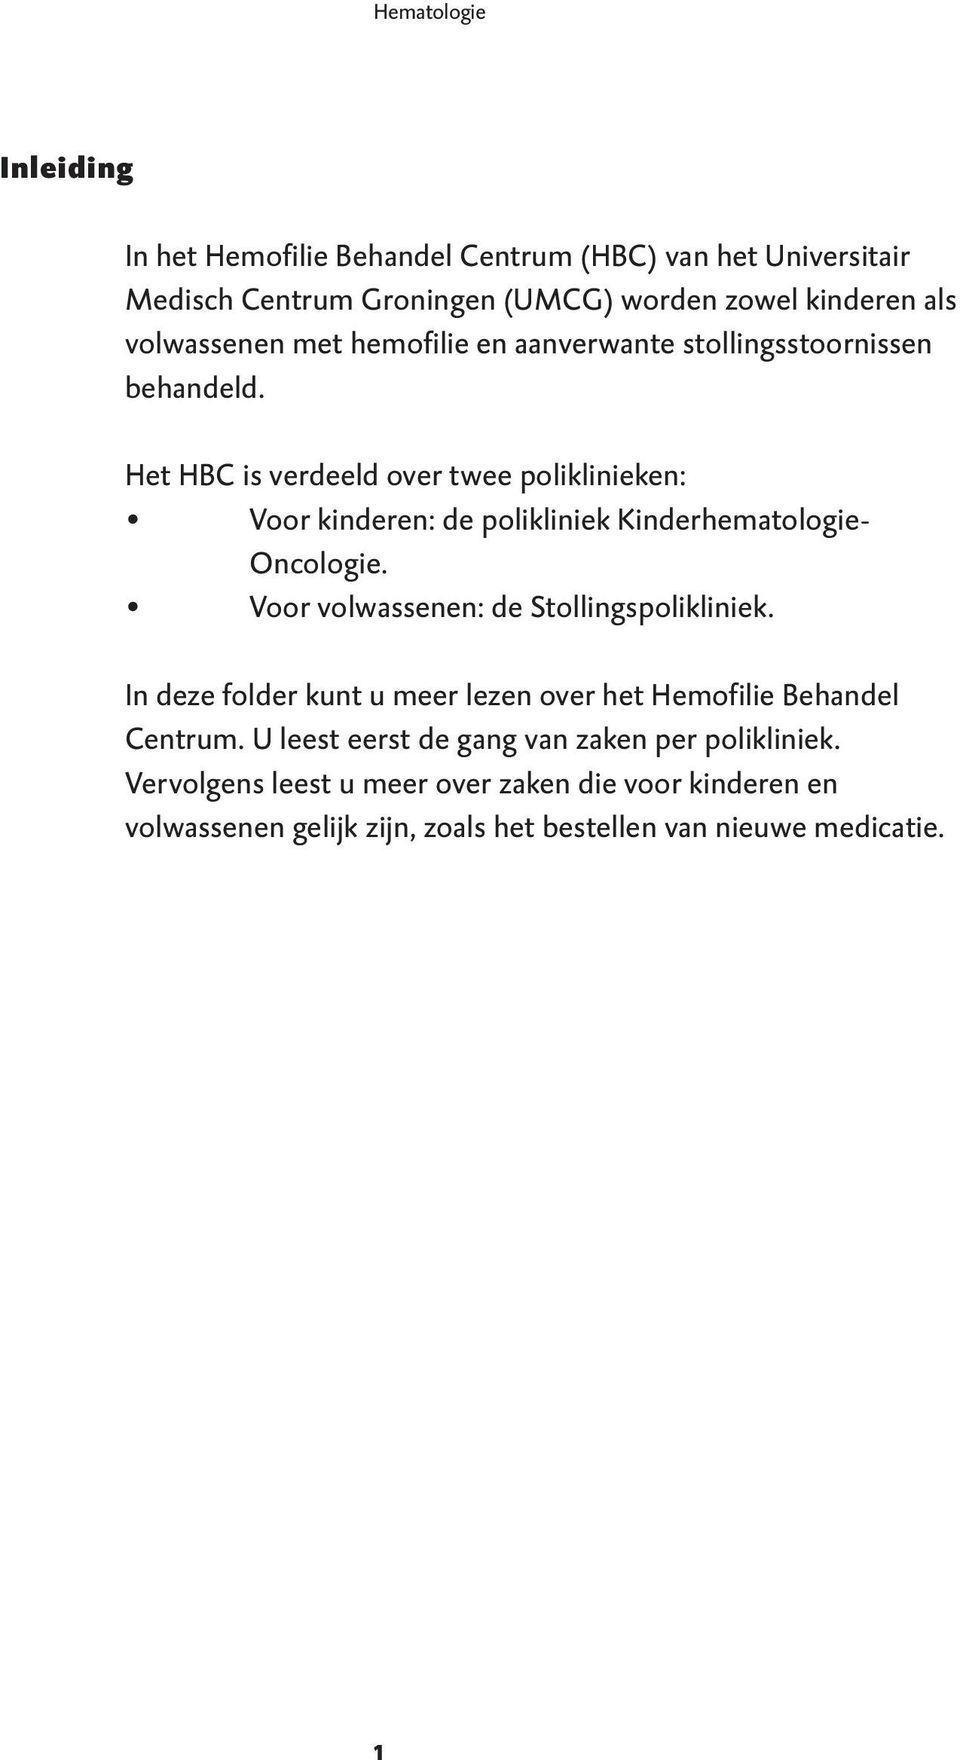 Het HBC is verdeeld over twee poliklinieken: Voor kinderen: de polikliniek Kinderhematologie- Oncologie. Voor volwassenen: de Stollingspolikliniek.